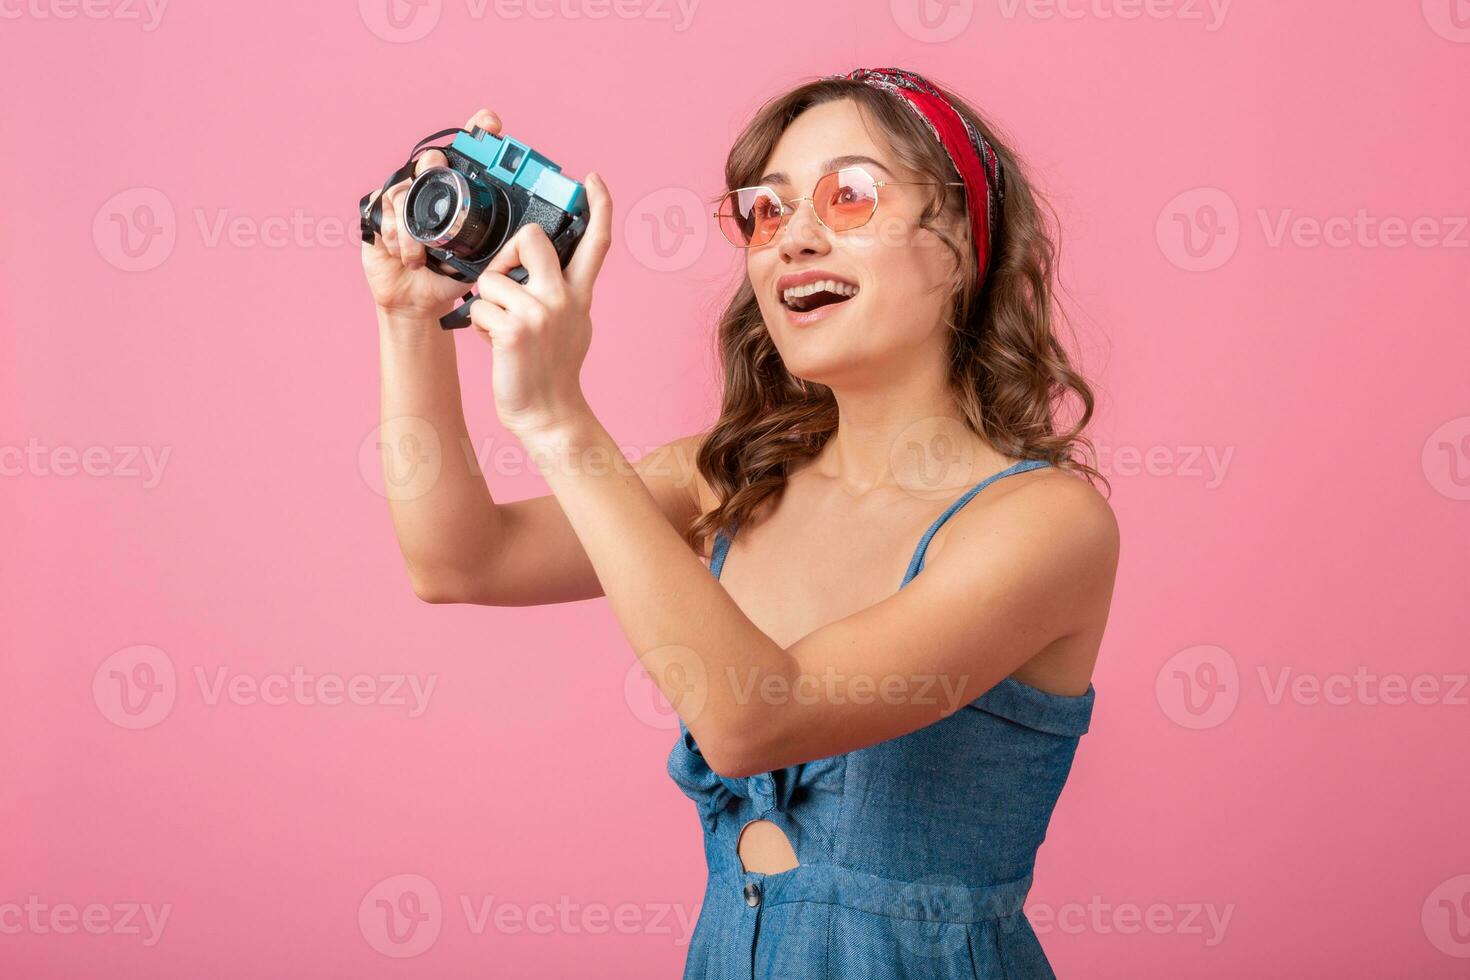 attraktiv lächelnd glücklich Frau posieren mit Jahrgang Foto Kamera